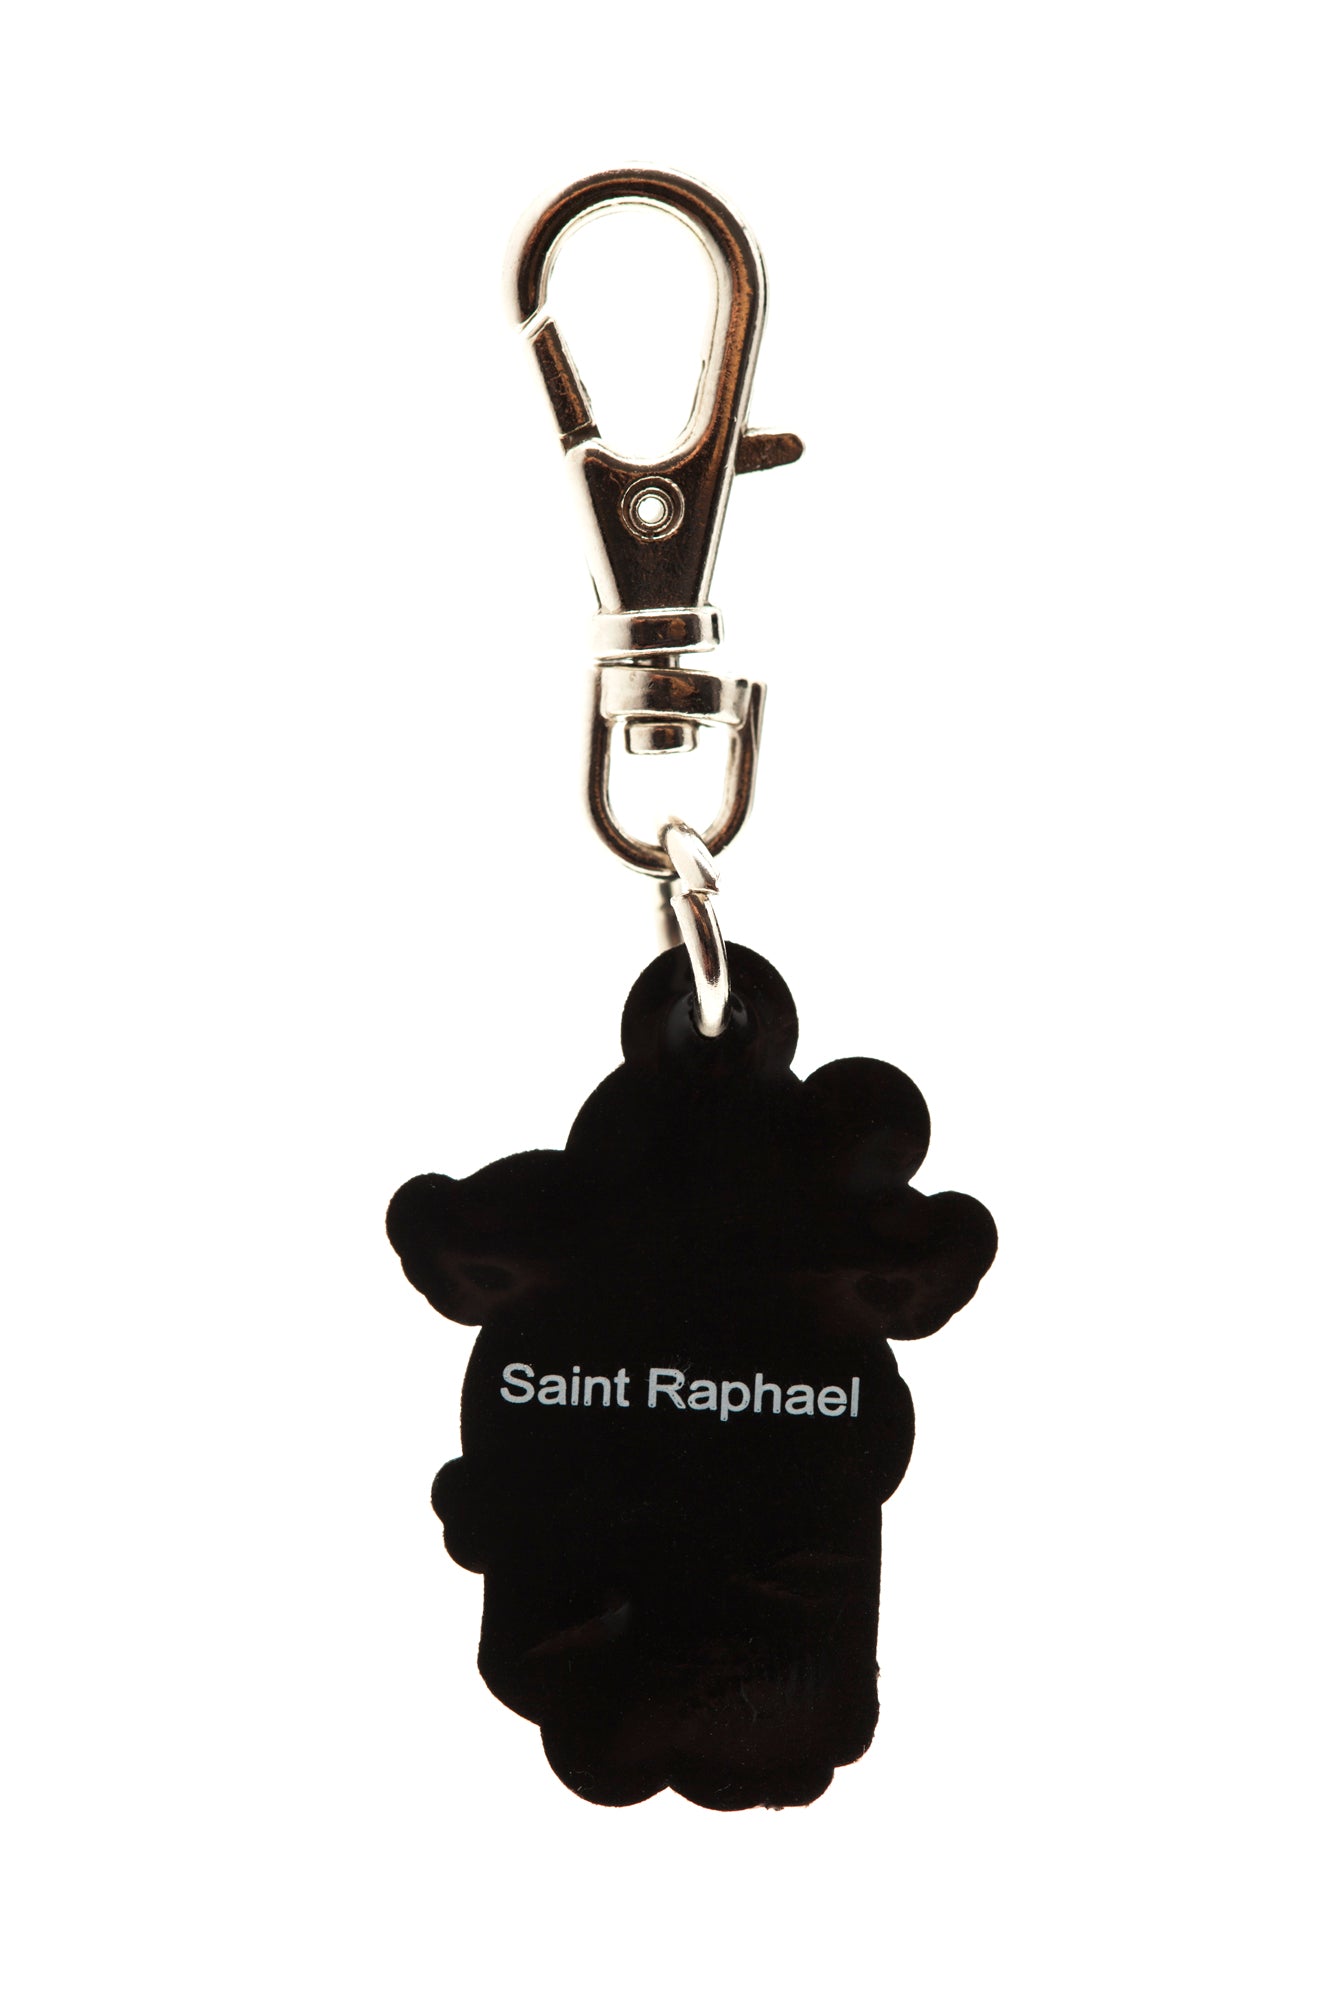 Saint Raphael charm